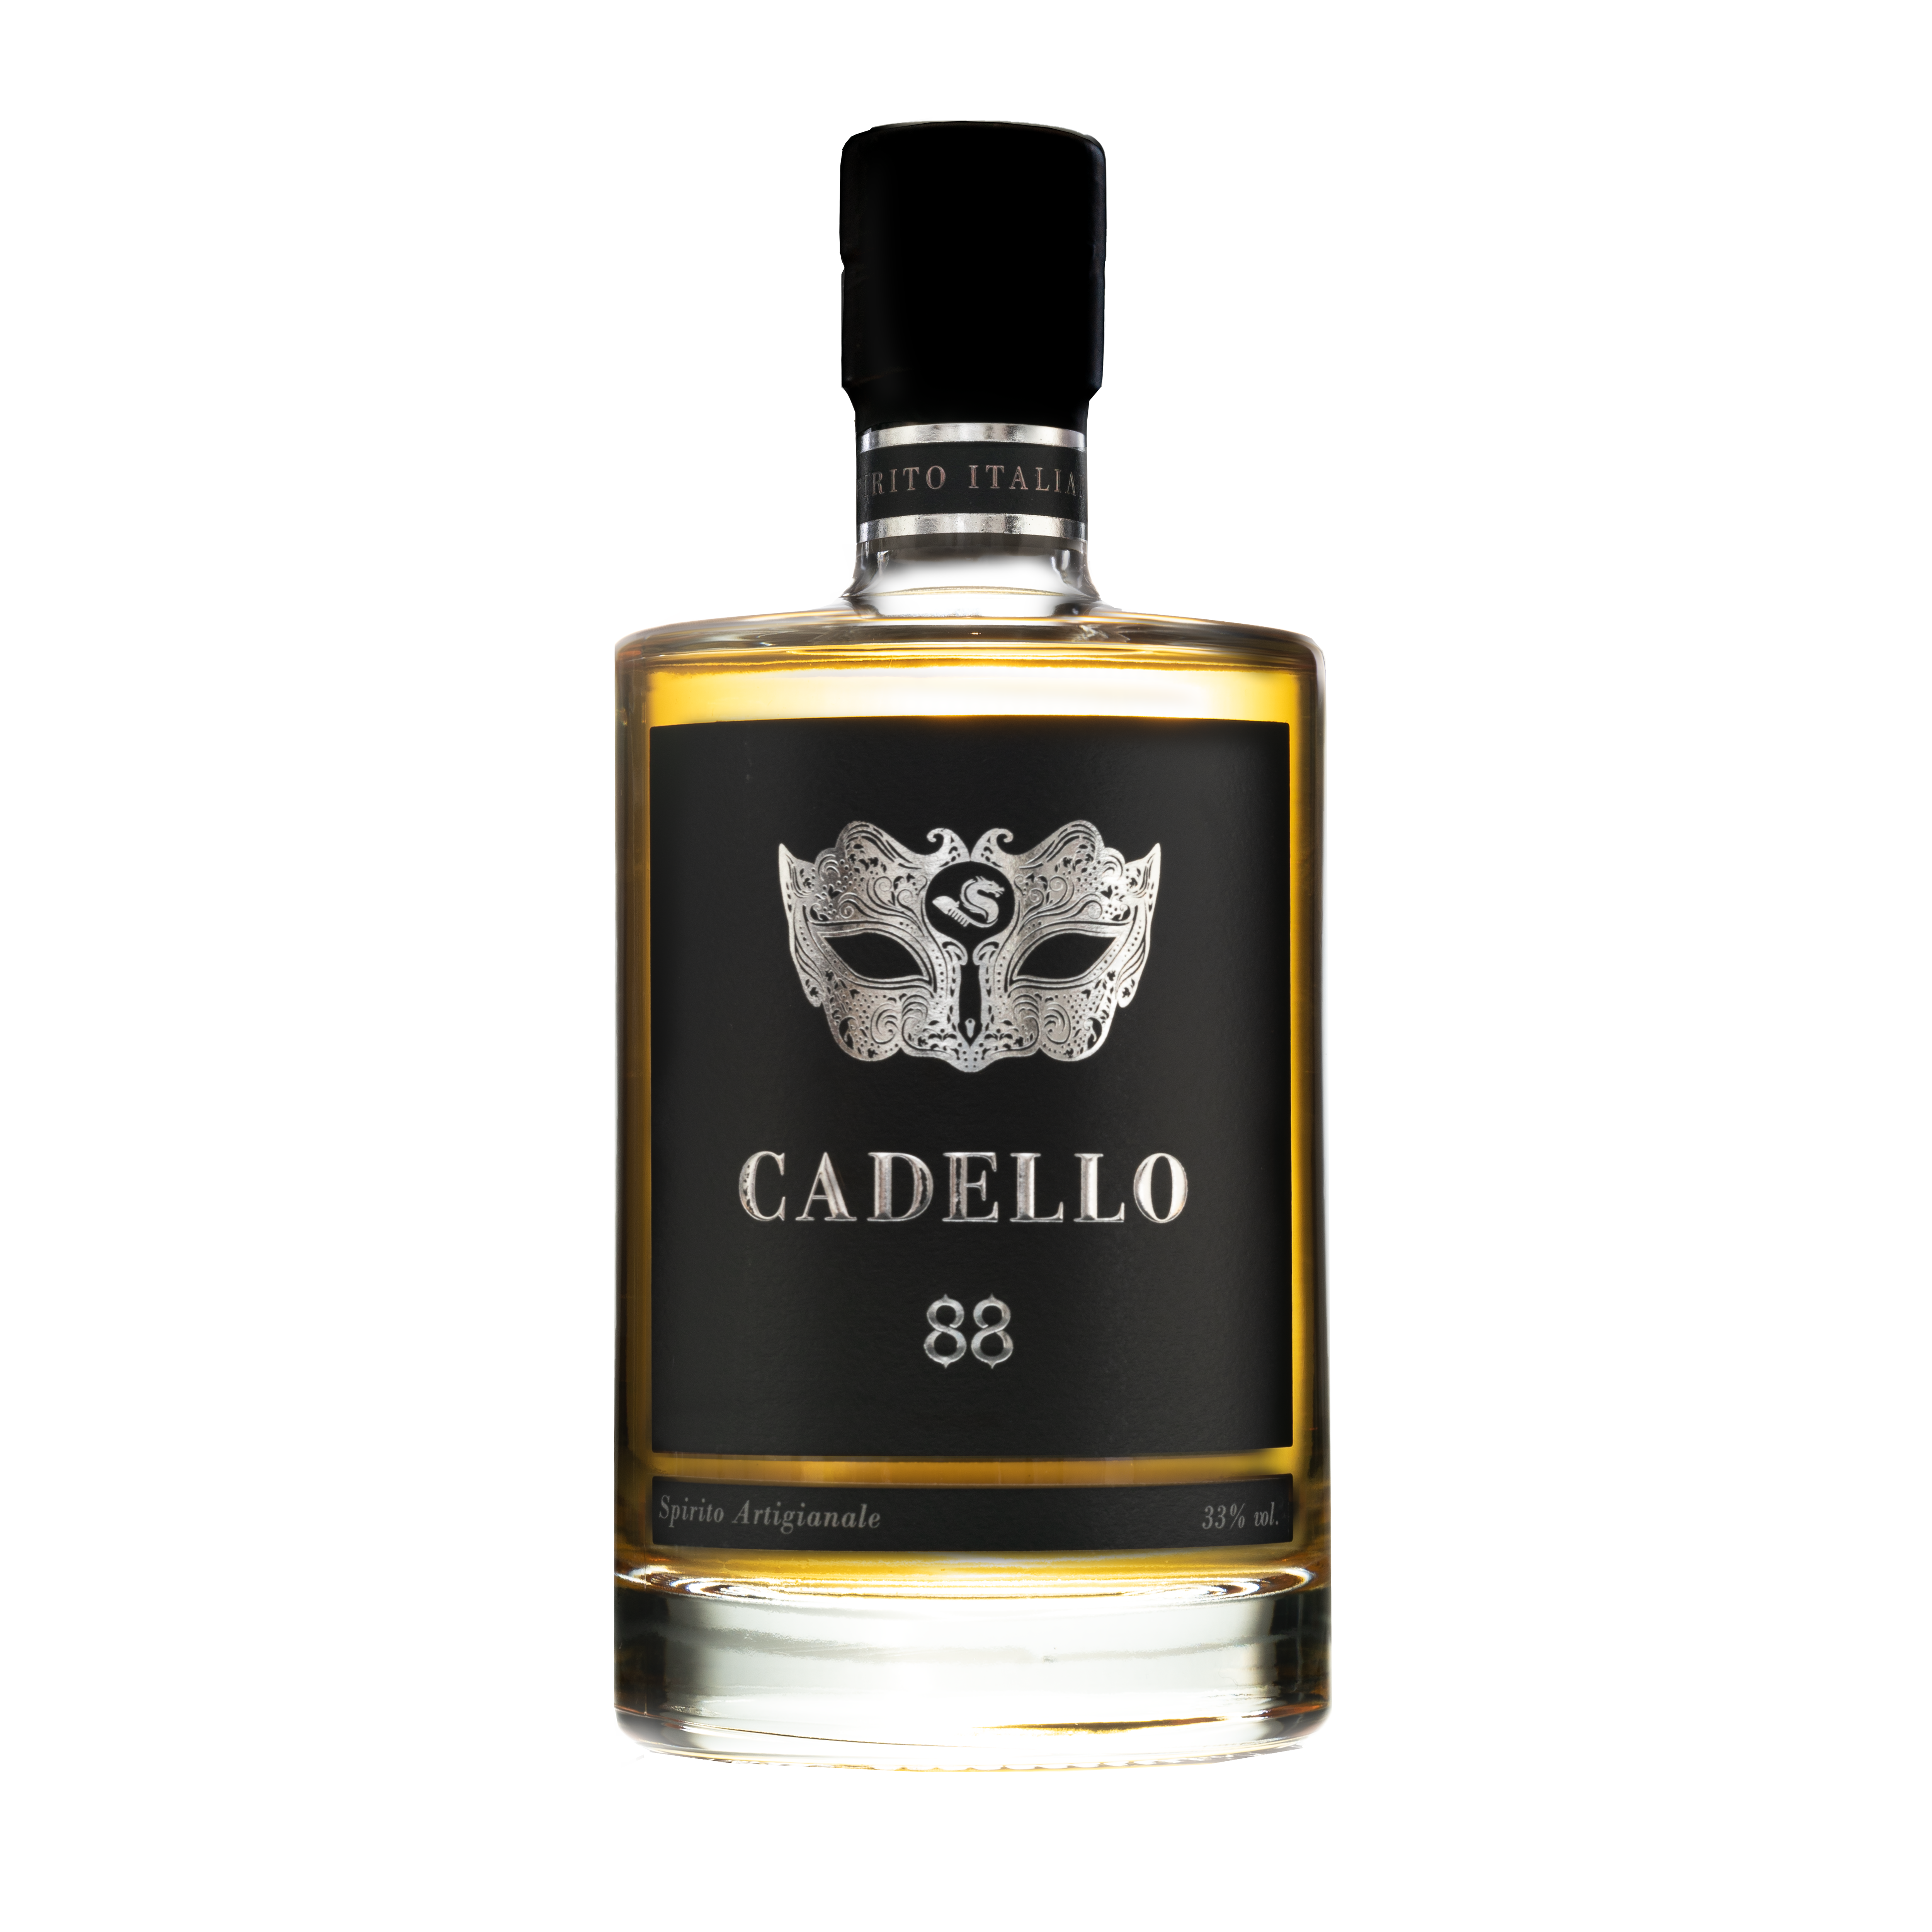 Cadello-bottle-premier-labels